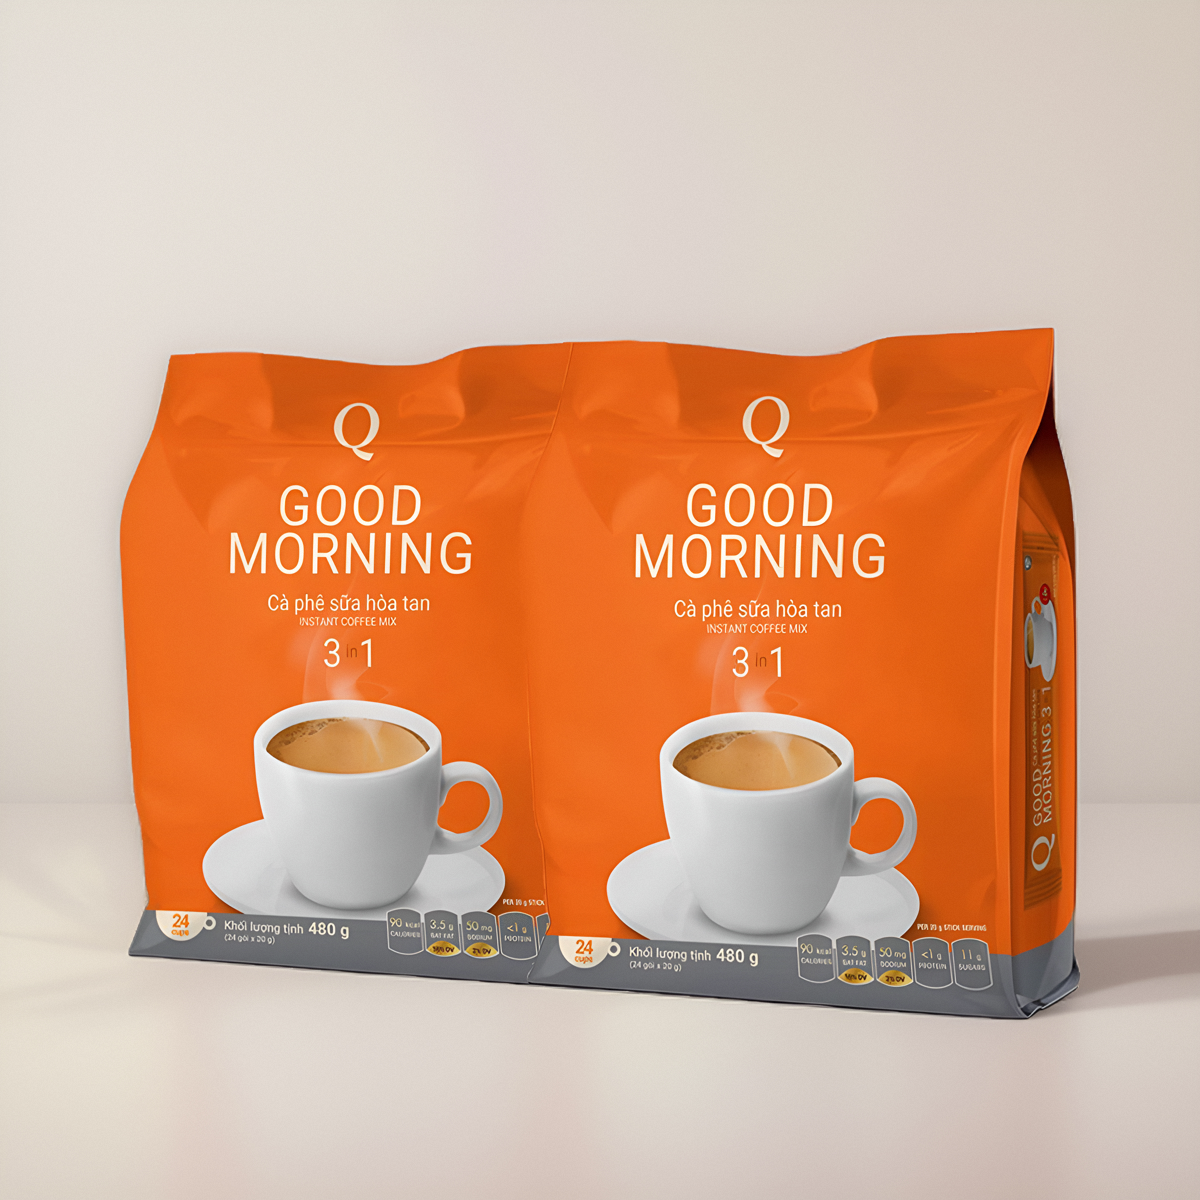 越南进口Q牌咖啡480g goodmorning三合一速溶早餐咖啡粉袋装包装